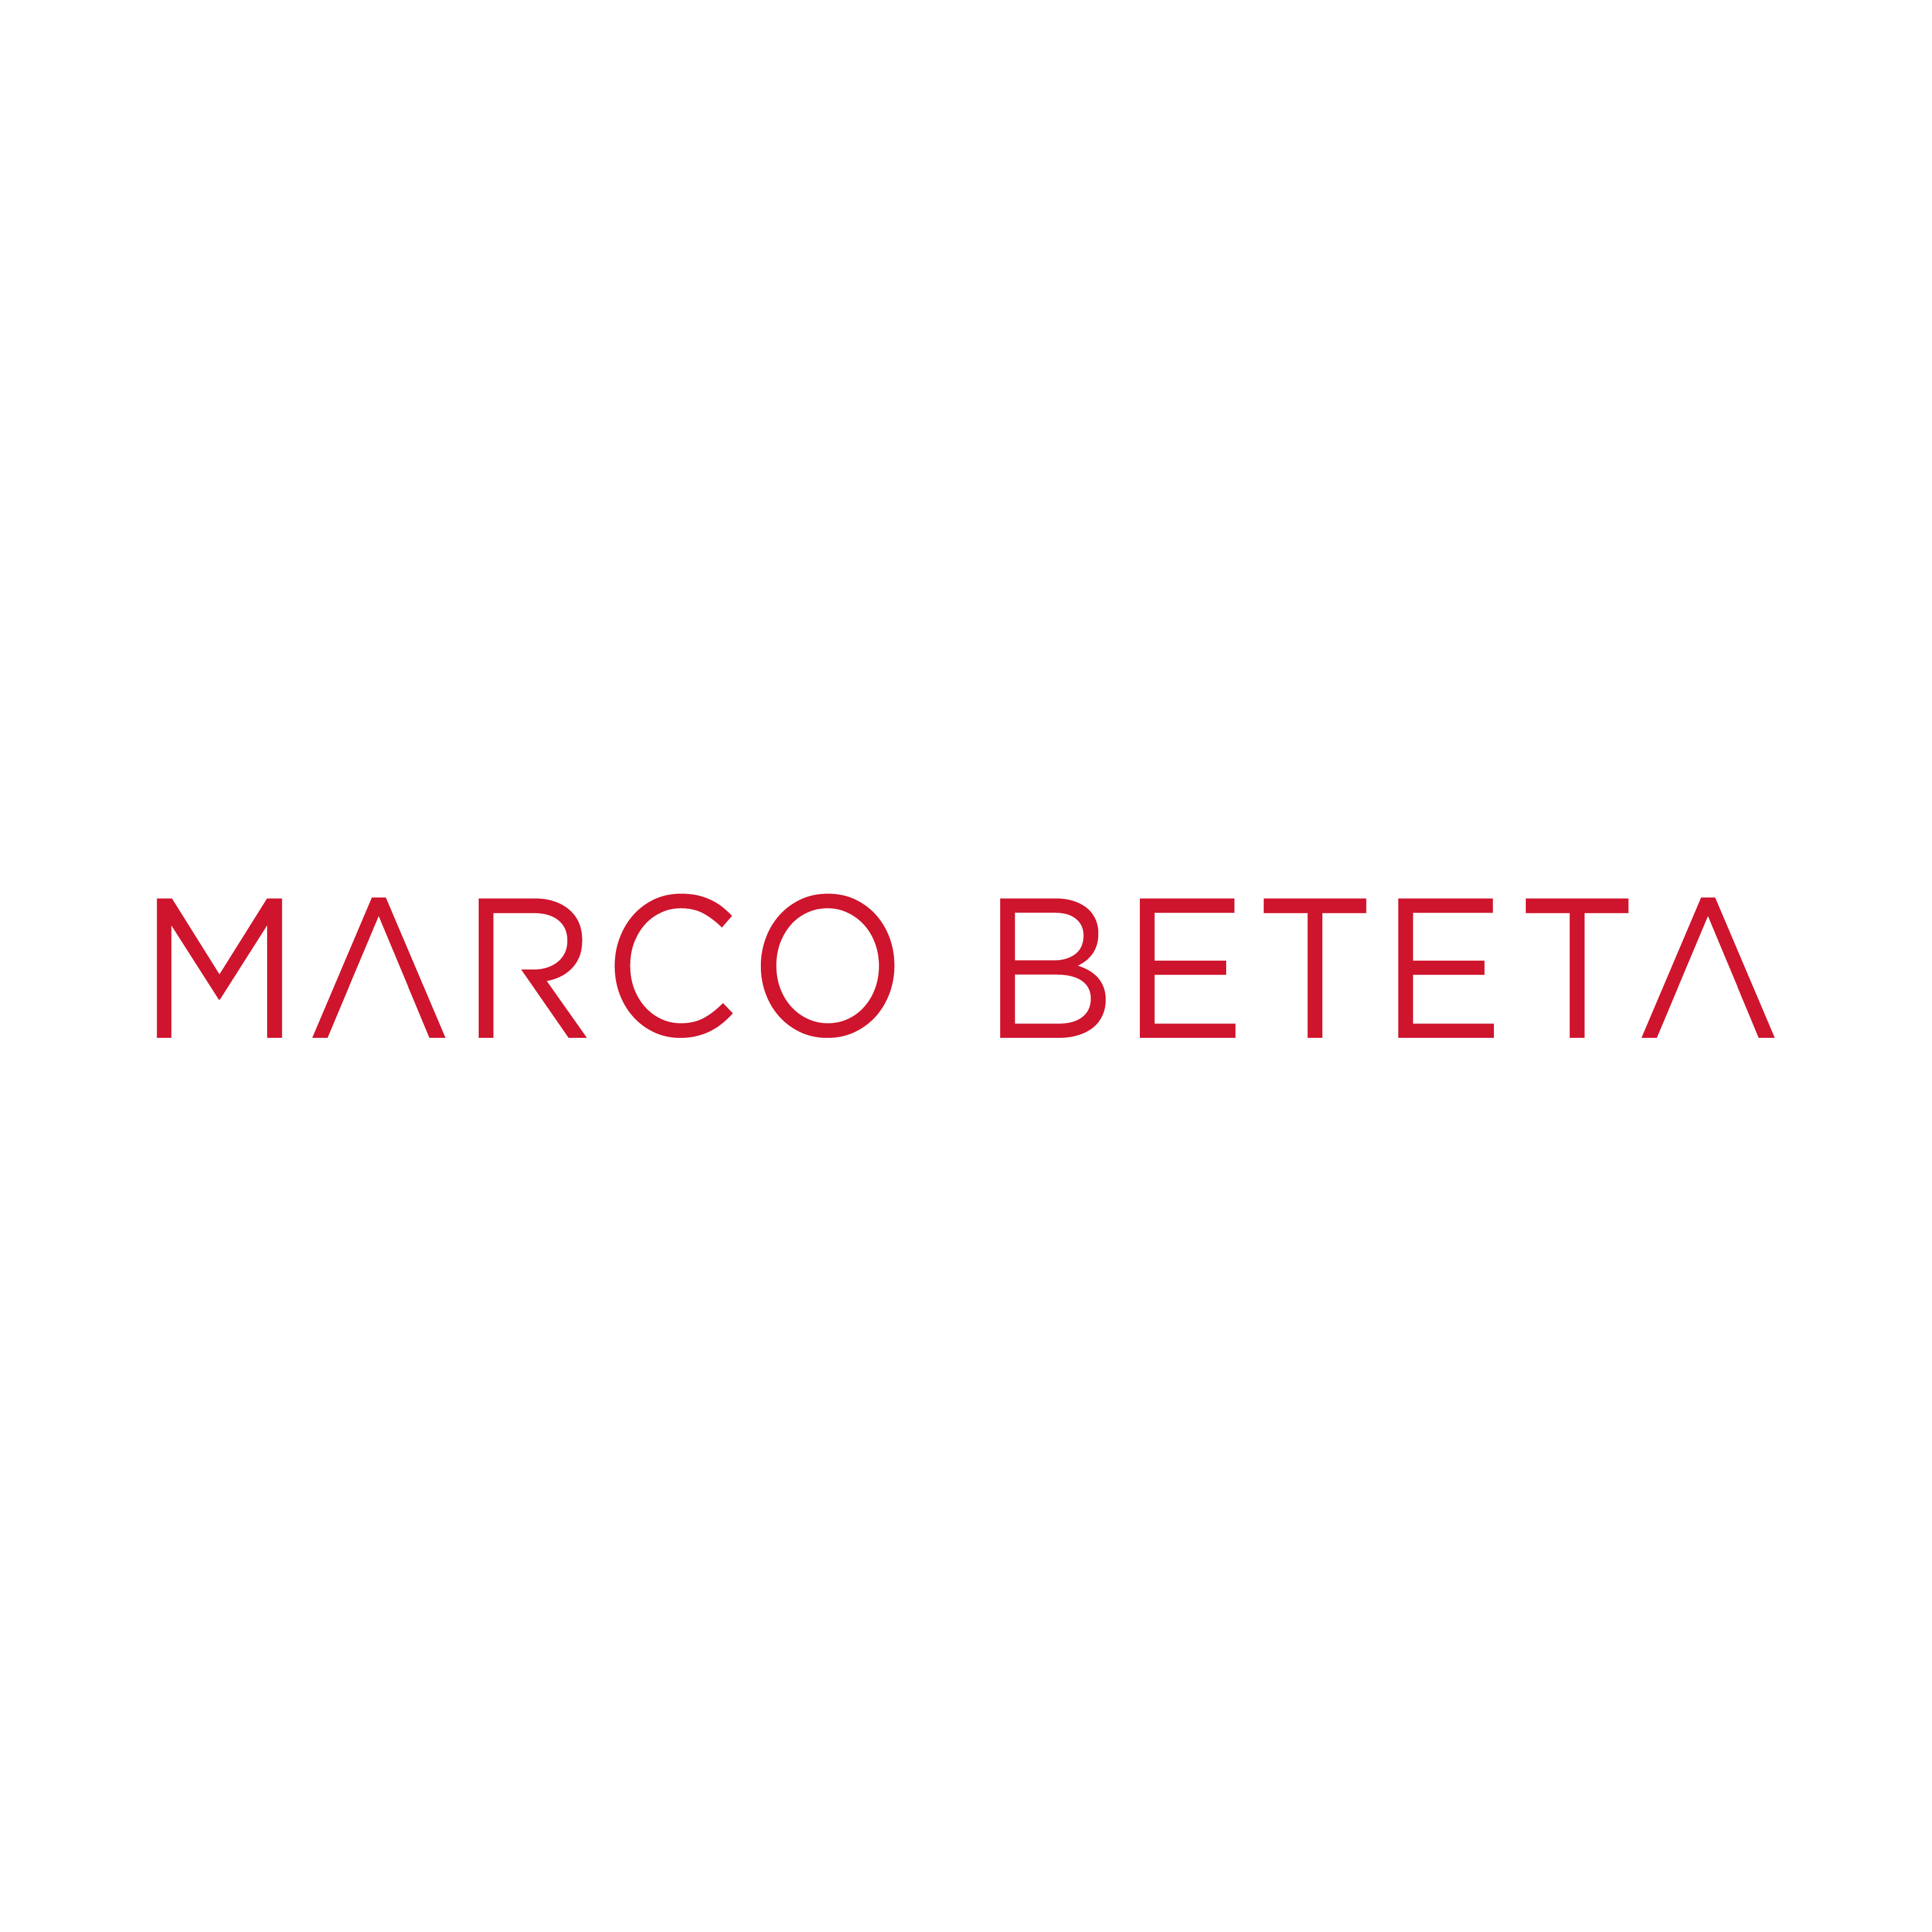 Marco Beteta